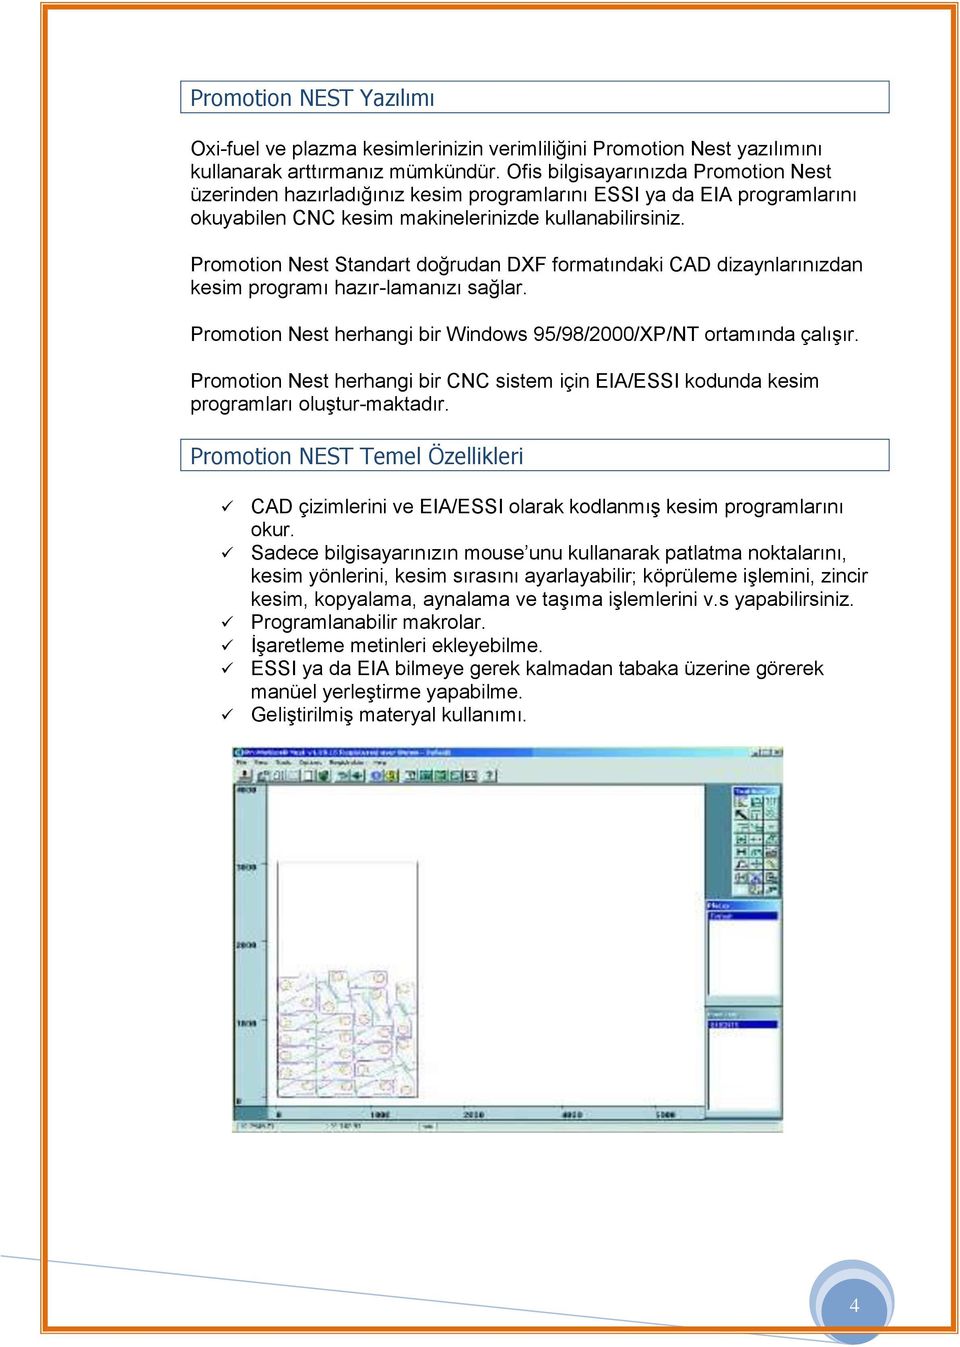 Promotion Nest Standart doğrudan DXF formatındaki CAD dizaynlarınızdan kesim programı hazır-lamanızı sağlar. Promotion Nest herhangi bir Windows 95/98/2000/XP/NT ortamında çalışır.